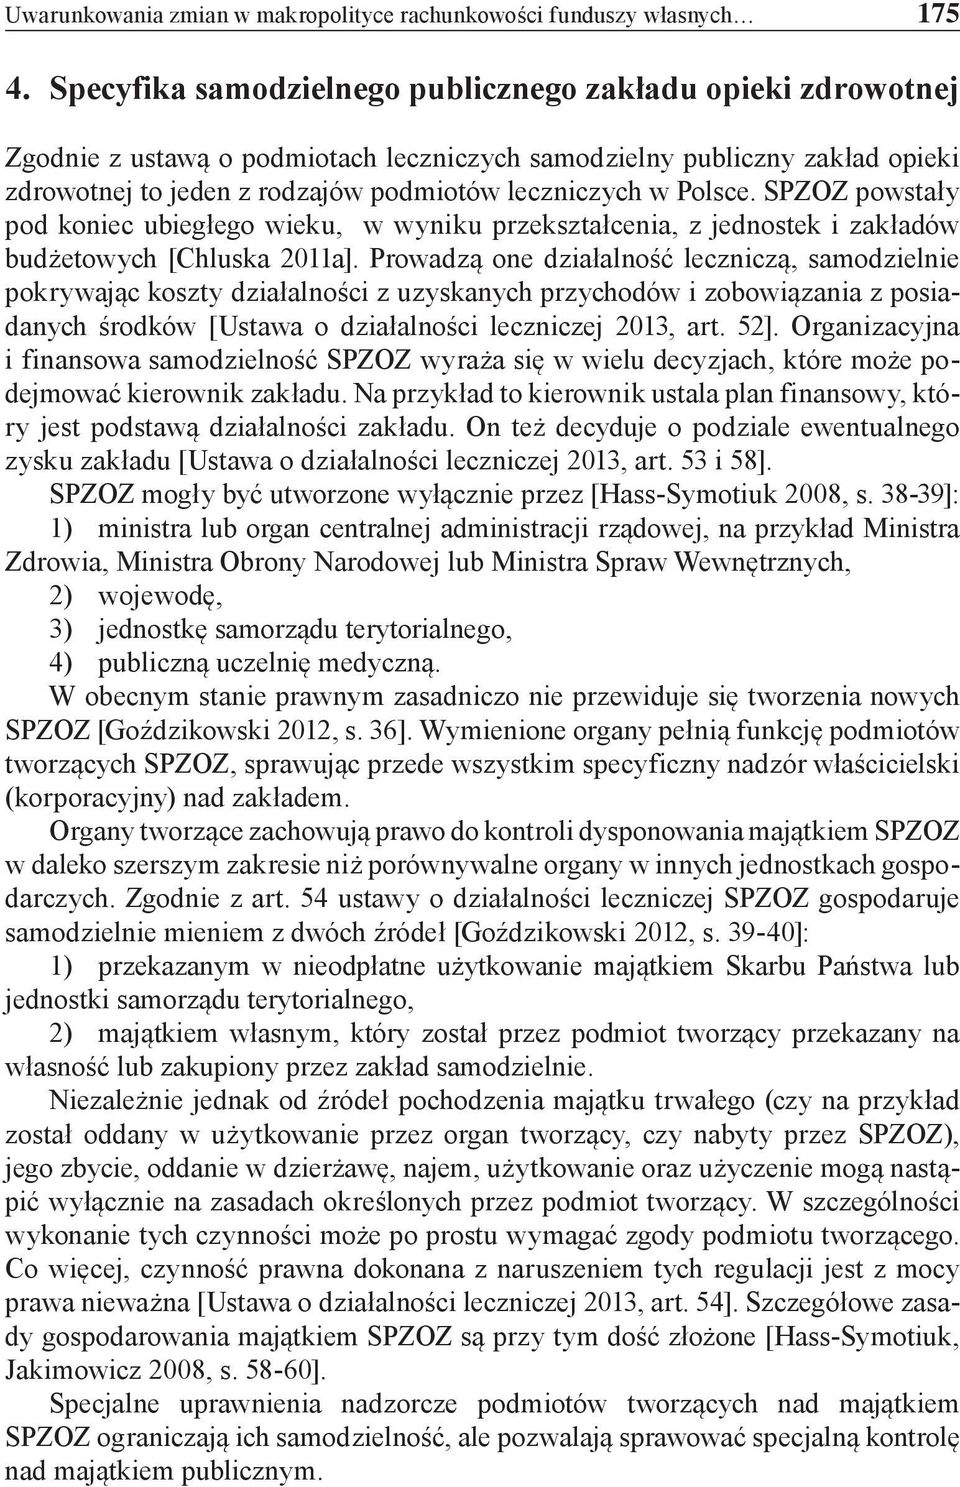 Polsce. SPZOZ powstały pod koniec ubiegłego wieku, w wyniku przekształcenia, z jednostek i zakładów budżetowych [Chluska 2011a].